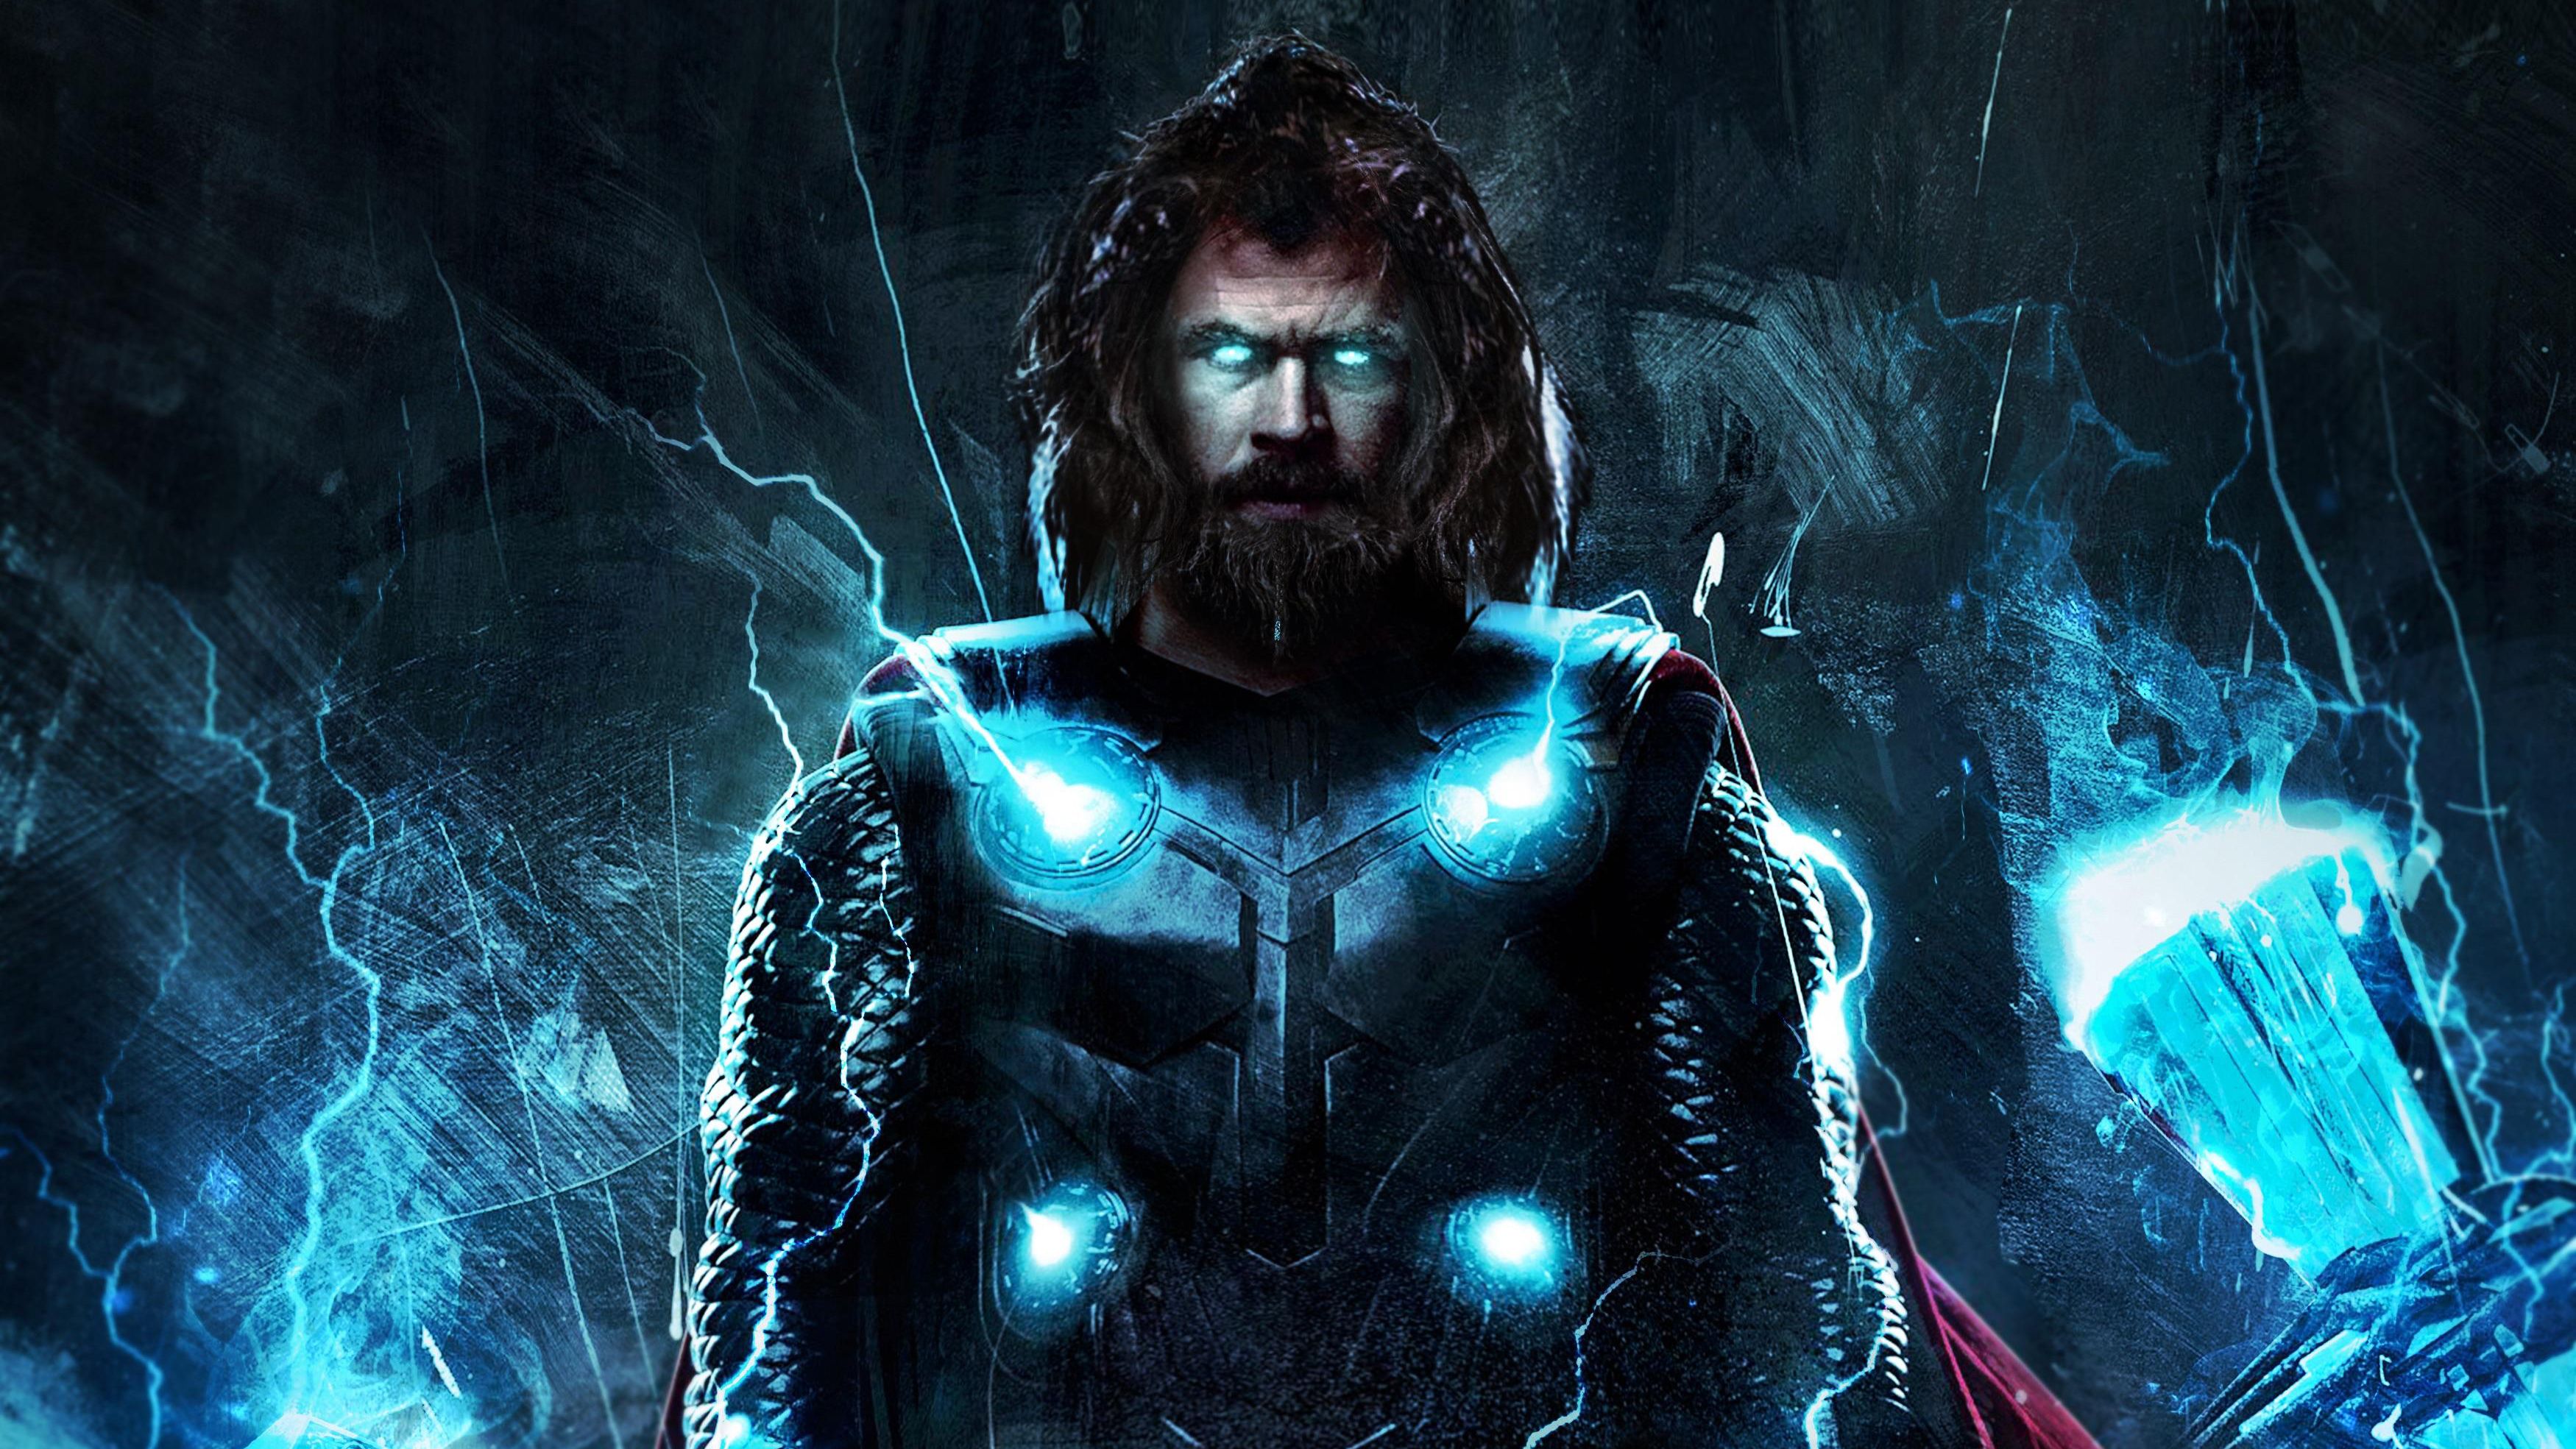 4k Thor In Avengers Endgame, HD Superheroes, 4k Wallpaper, Image